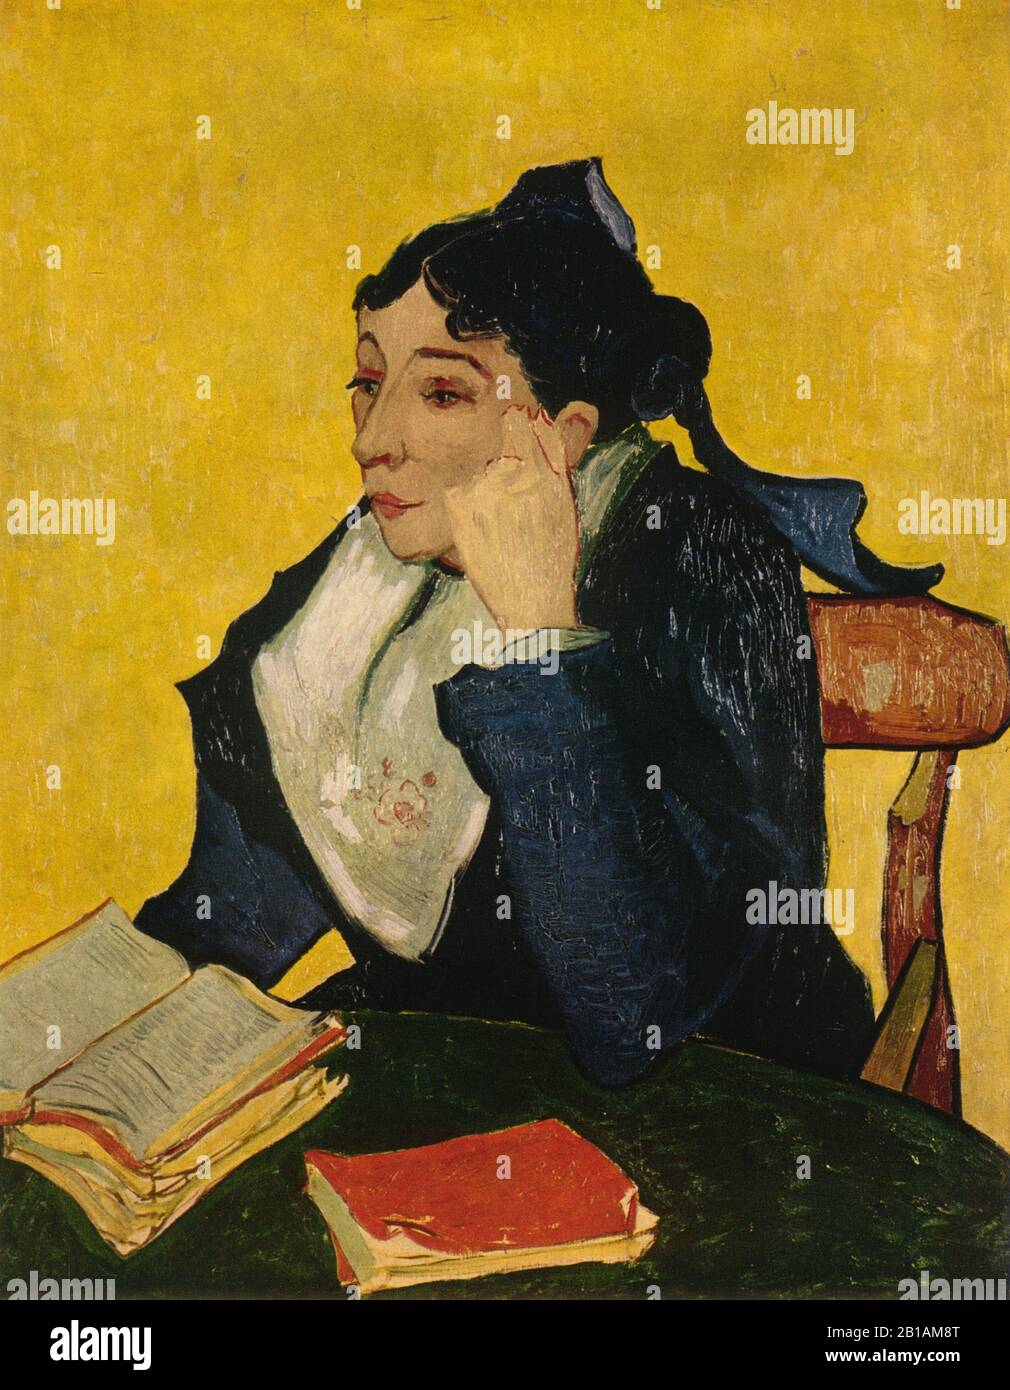 L'Arlesienne - la ragazza di Arles (Madame Joseph-Michel Ginoux) 1888 dipinto di Vincent van Gogh - Immagine Ad Altissima risoluzione e qualità Foto Stock